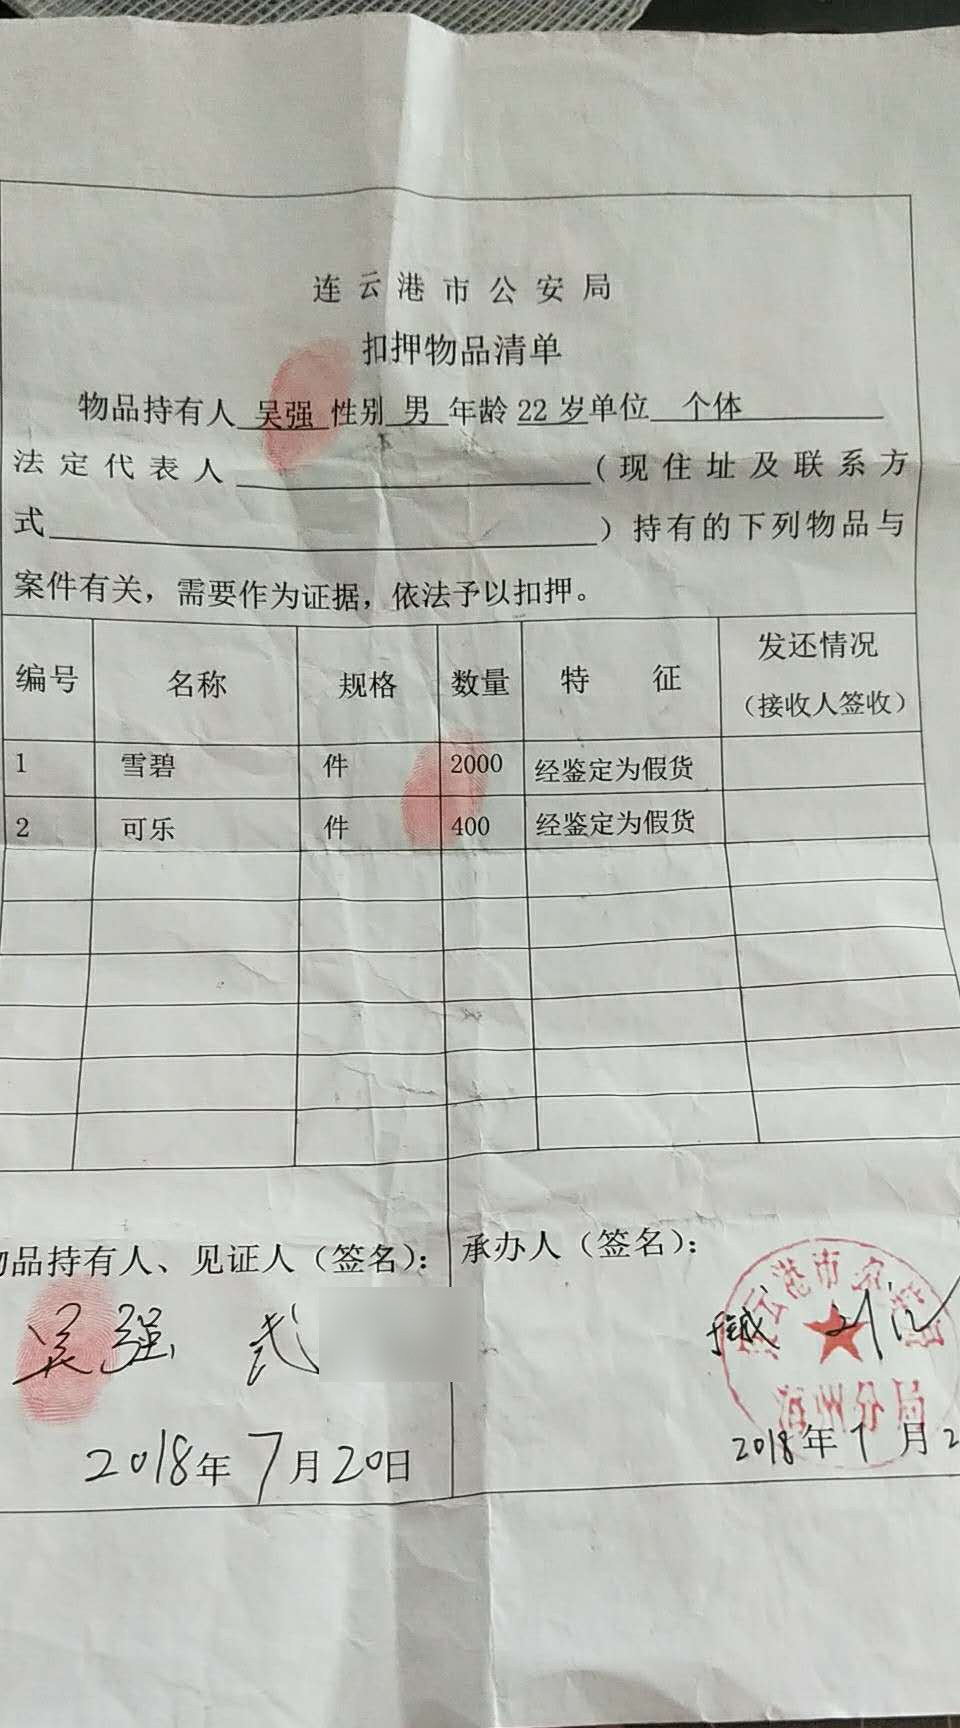 根据吴强提供的连云港市公安局扣押物品清单显示,2000件雪碧,400件